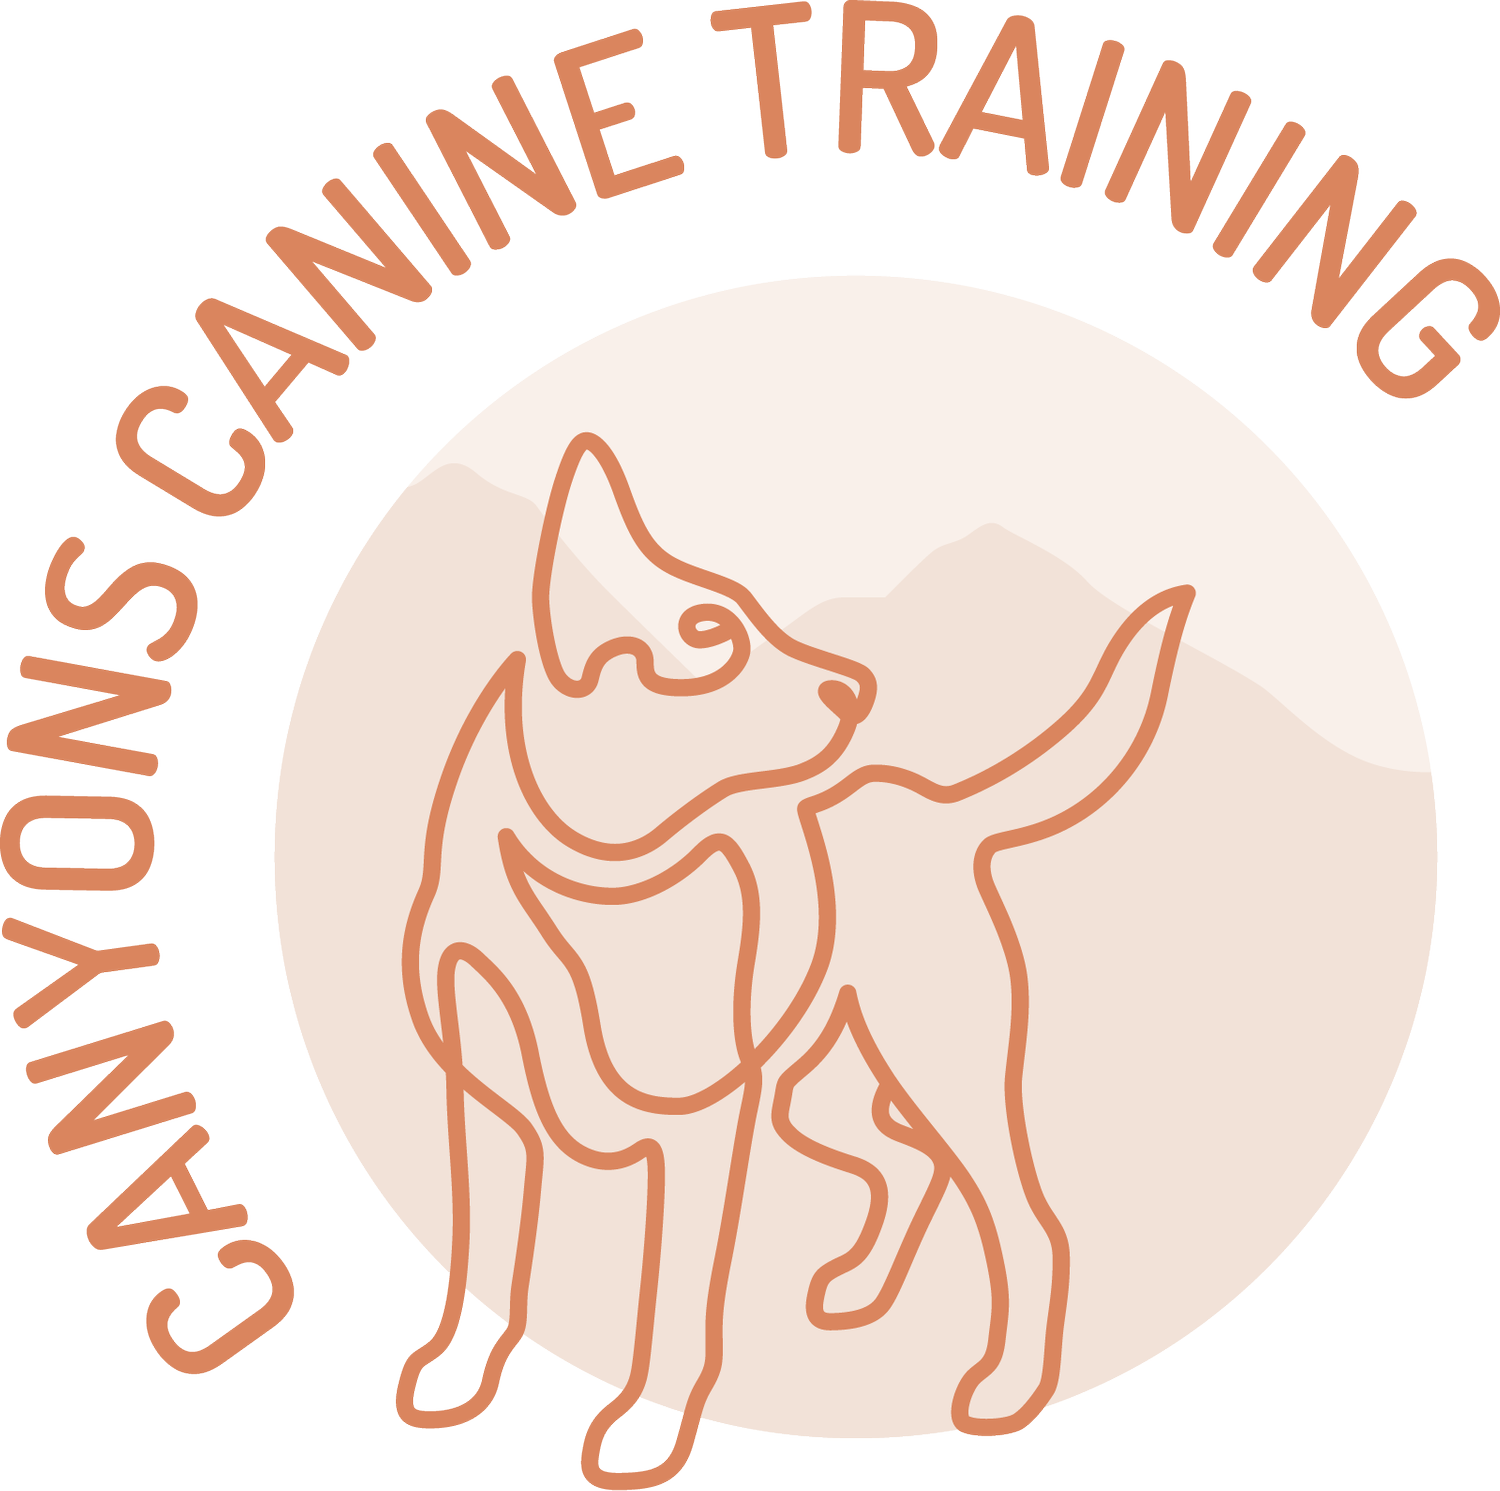 Canyons Canine Training